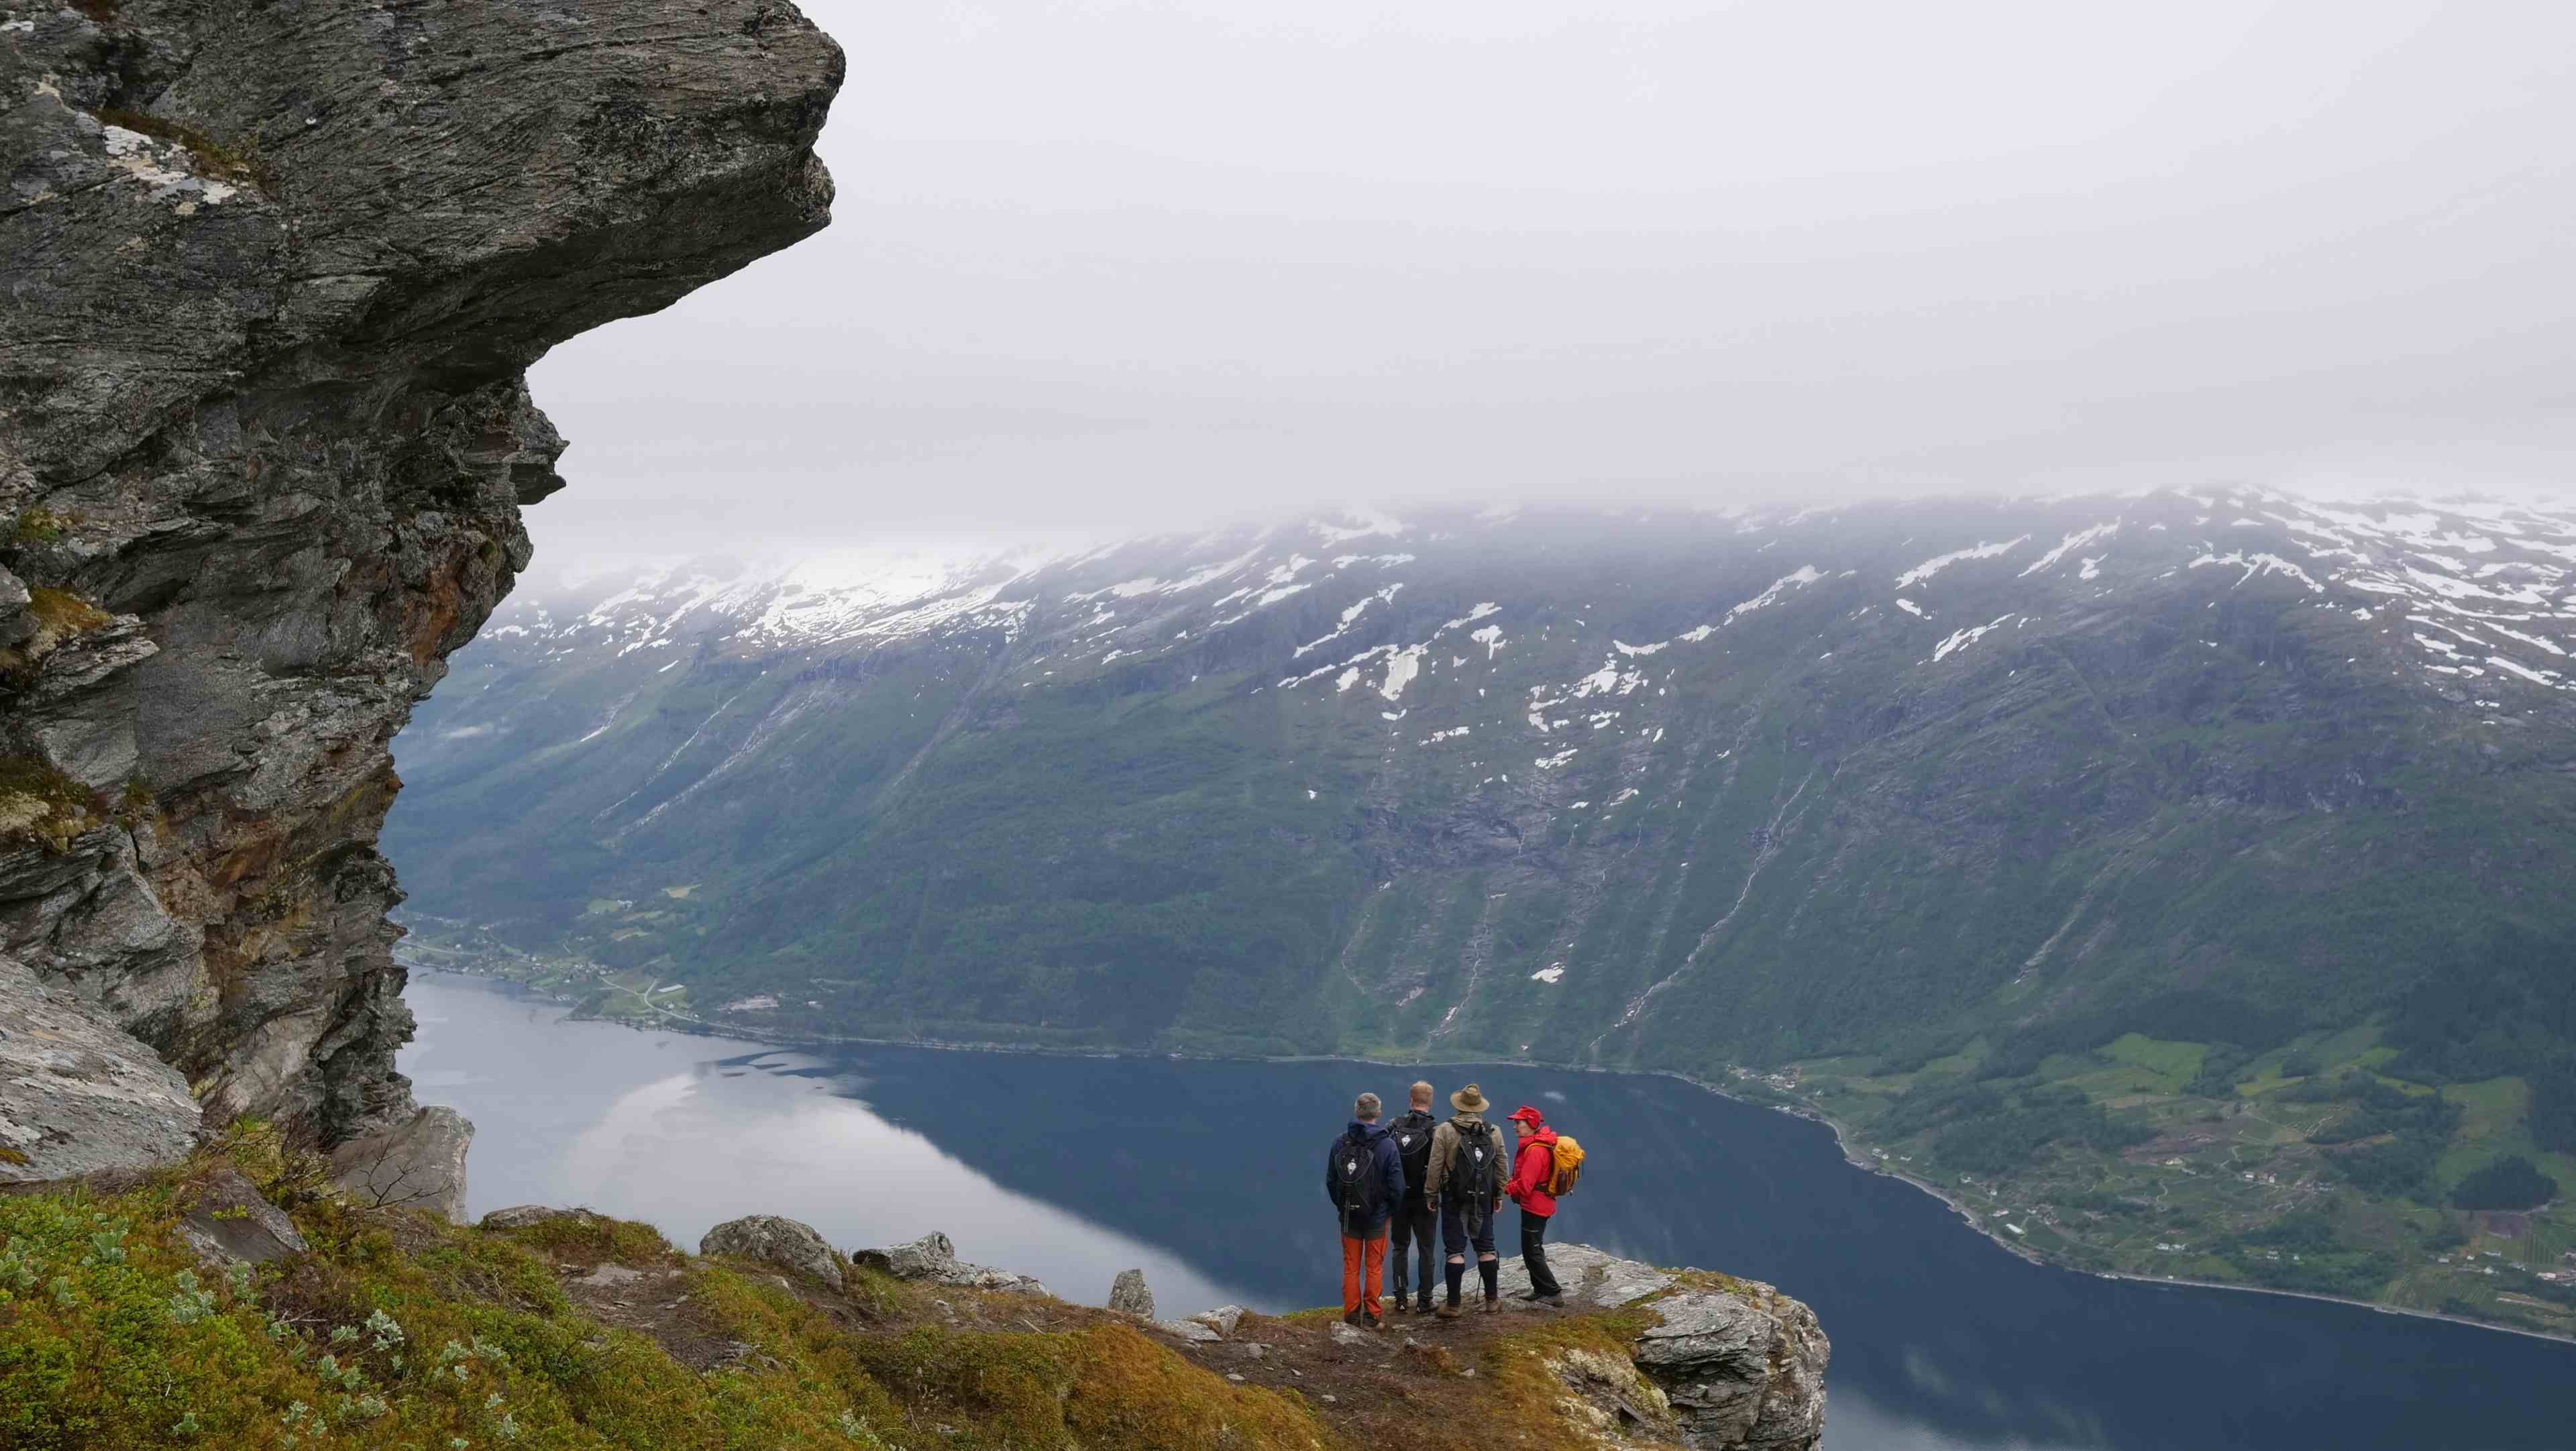 utsikt til Sørfjorden og Folgefonna frå Dronningstien